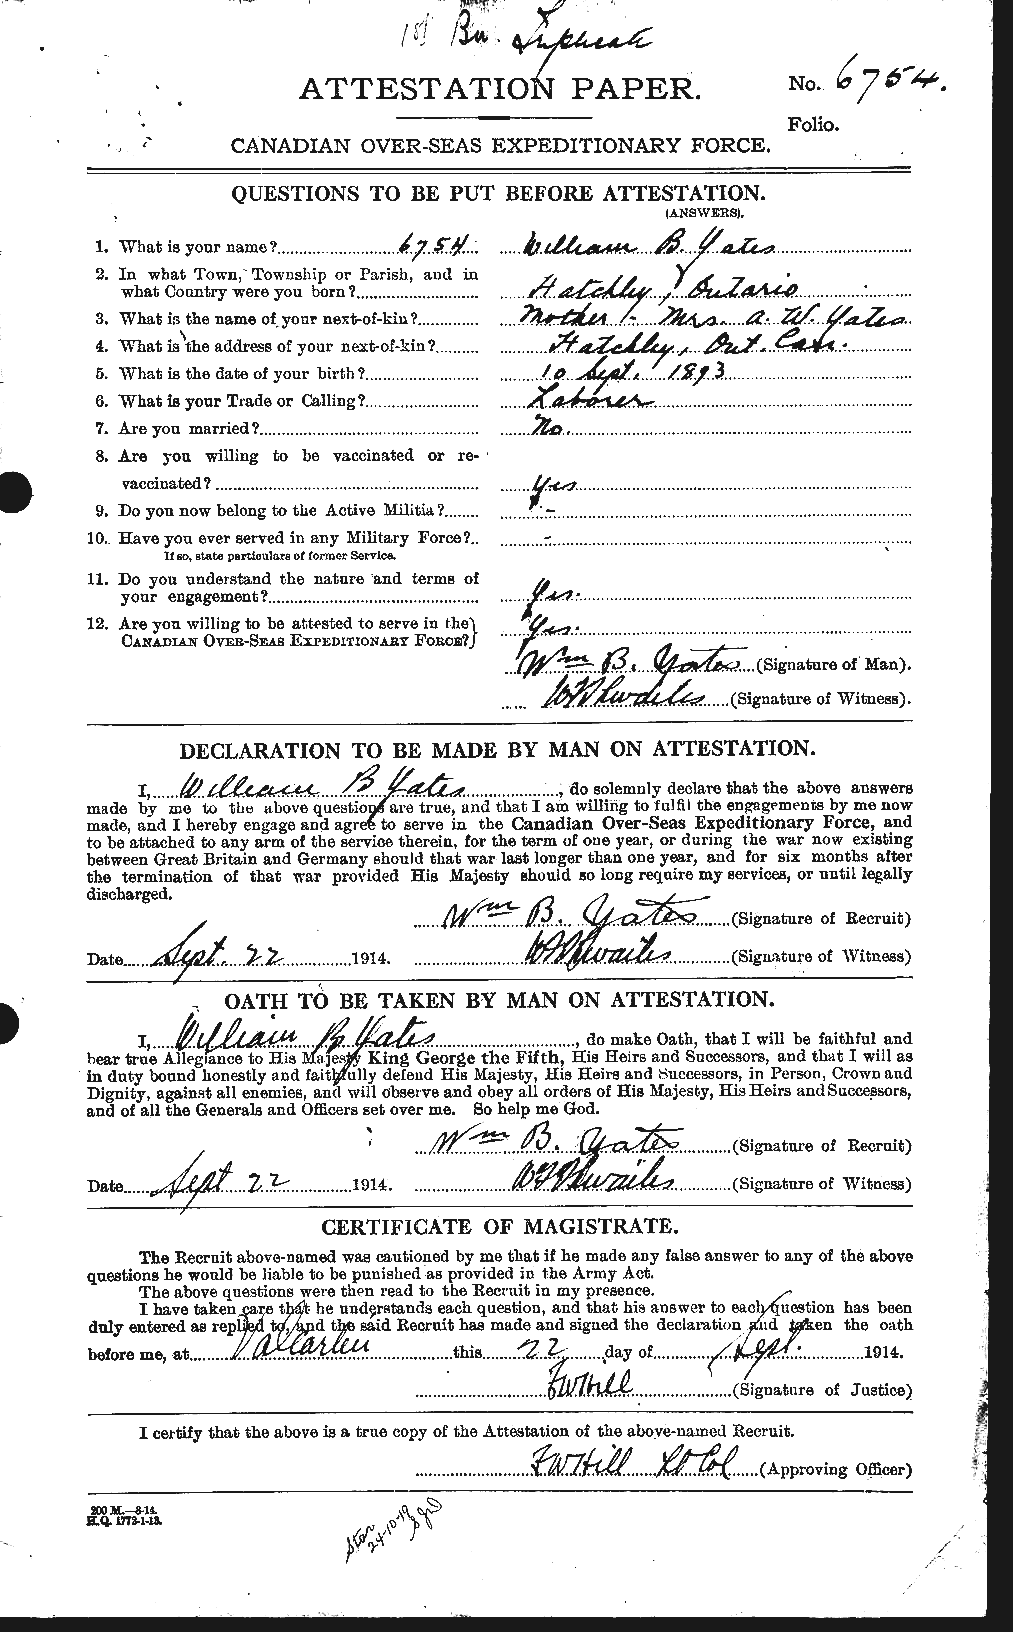 Dossiers du Personnel de la Première Guerre mondiale - CEC 691324a